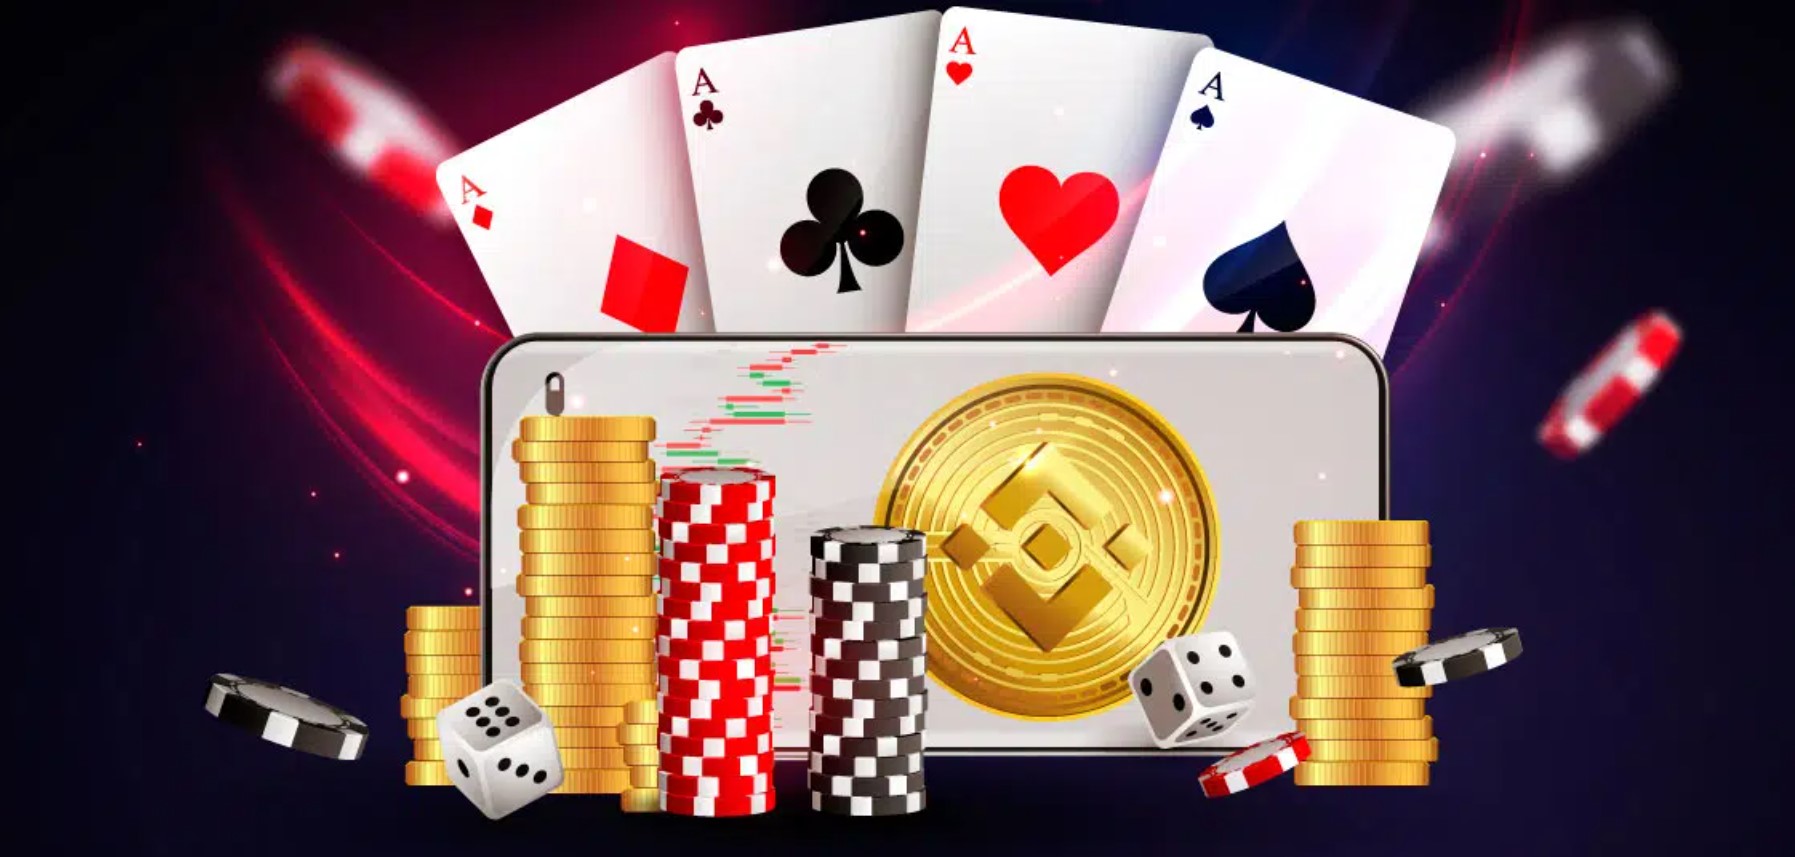 Meistern Sie Ihr Online Casino in 5 Minuten pro Tag